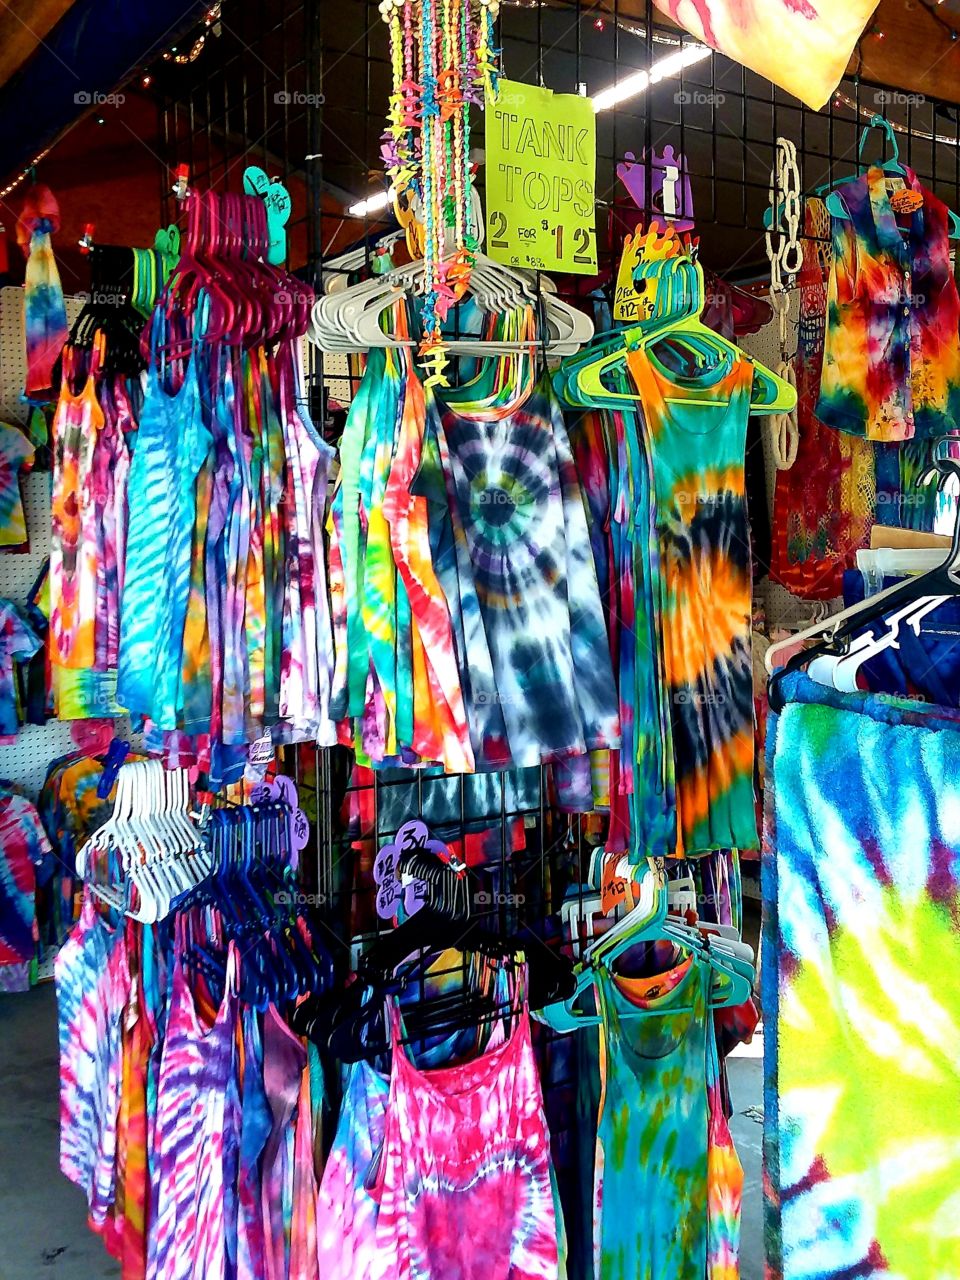 flea market beautiful tie dye colors!